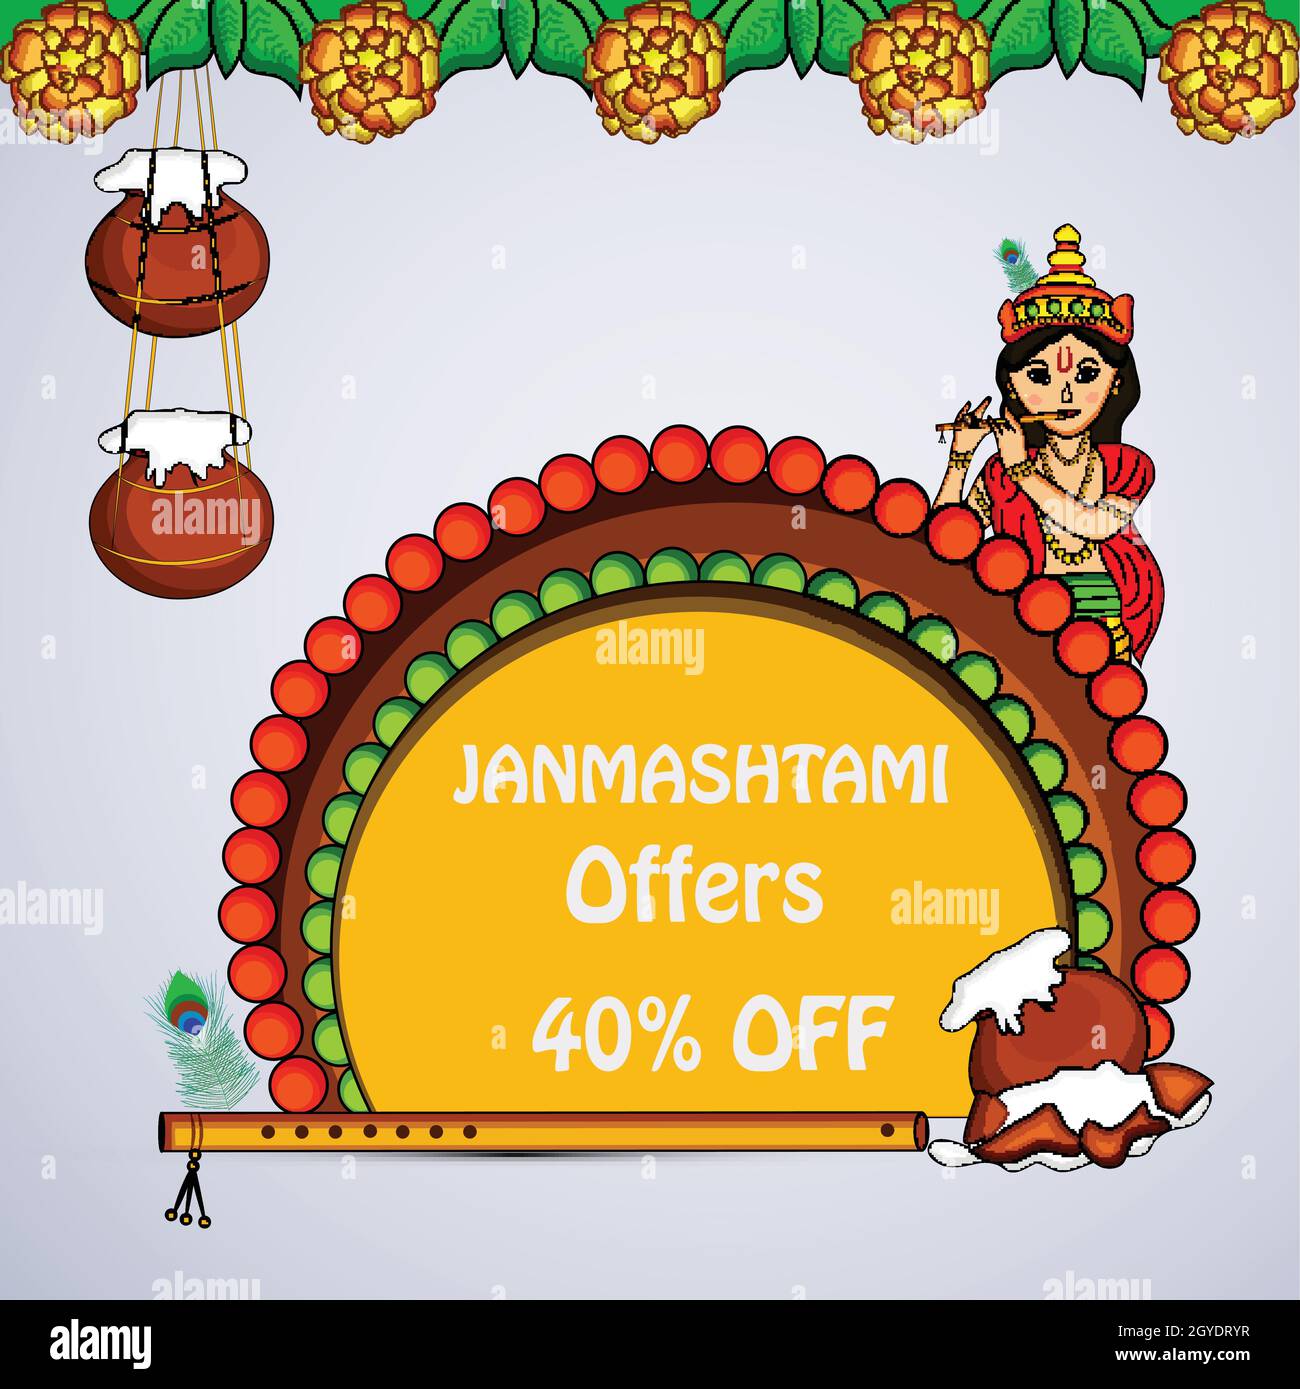 Hindu festival Janmashtami Background Stock Vector Image & Art - Alamy